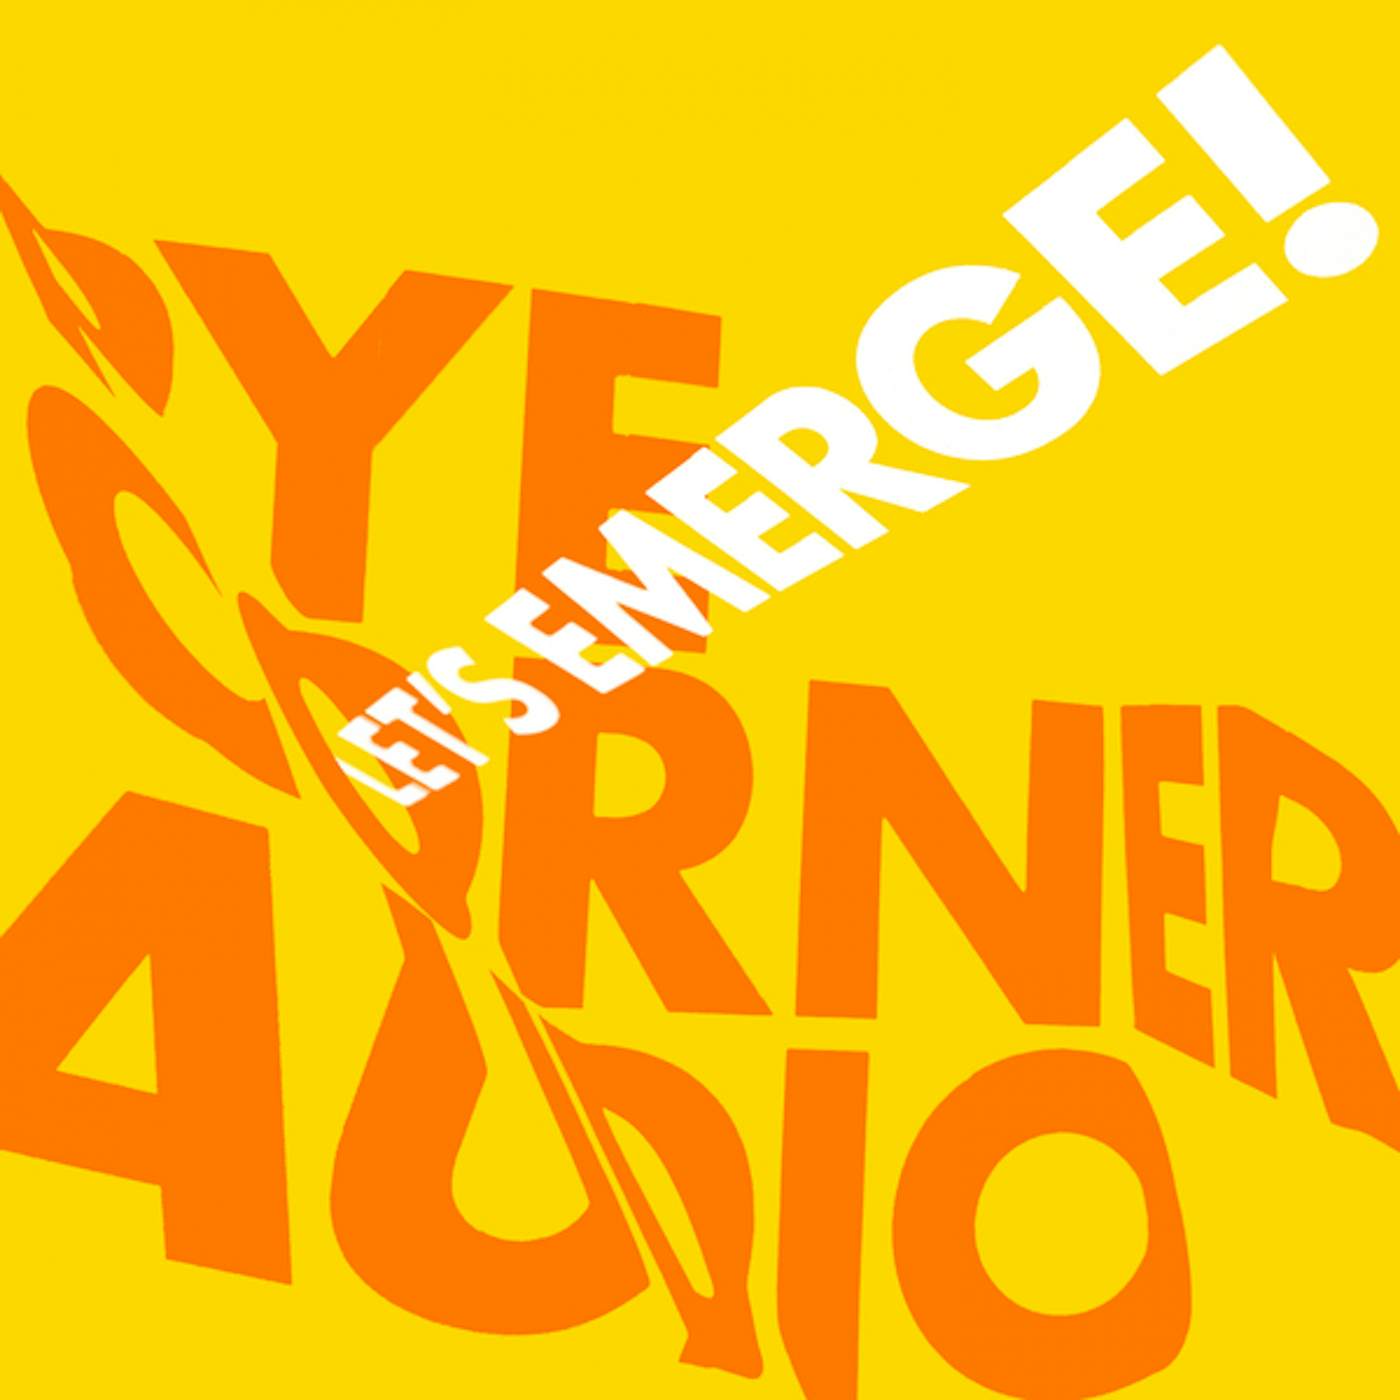 Pye Corner Audio Let's Emerge! (Translucent Yellow Vinyl) Vinyl Record